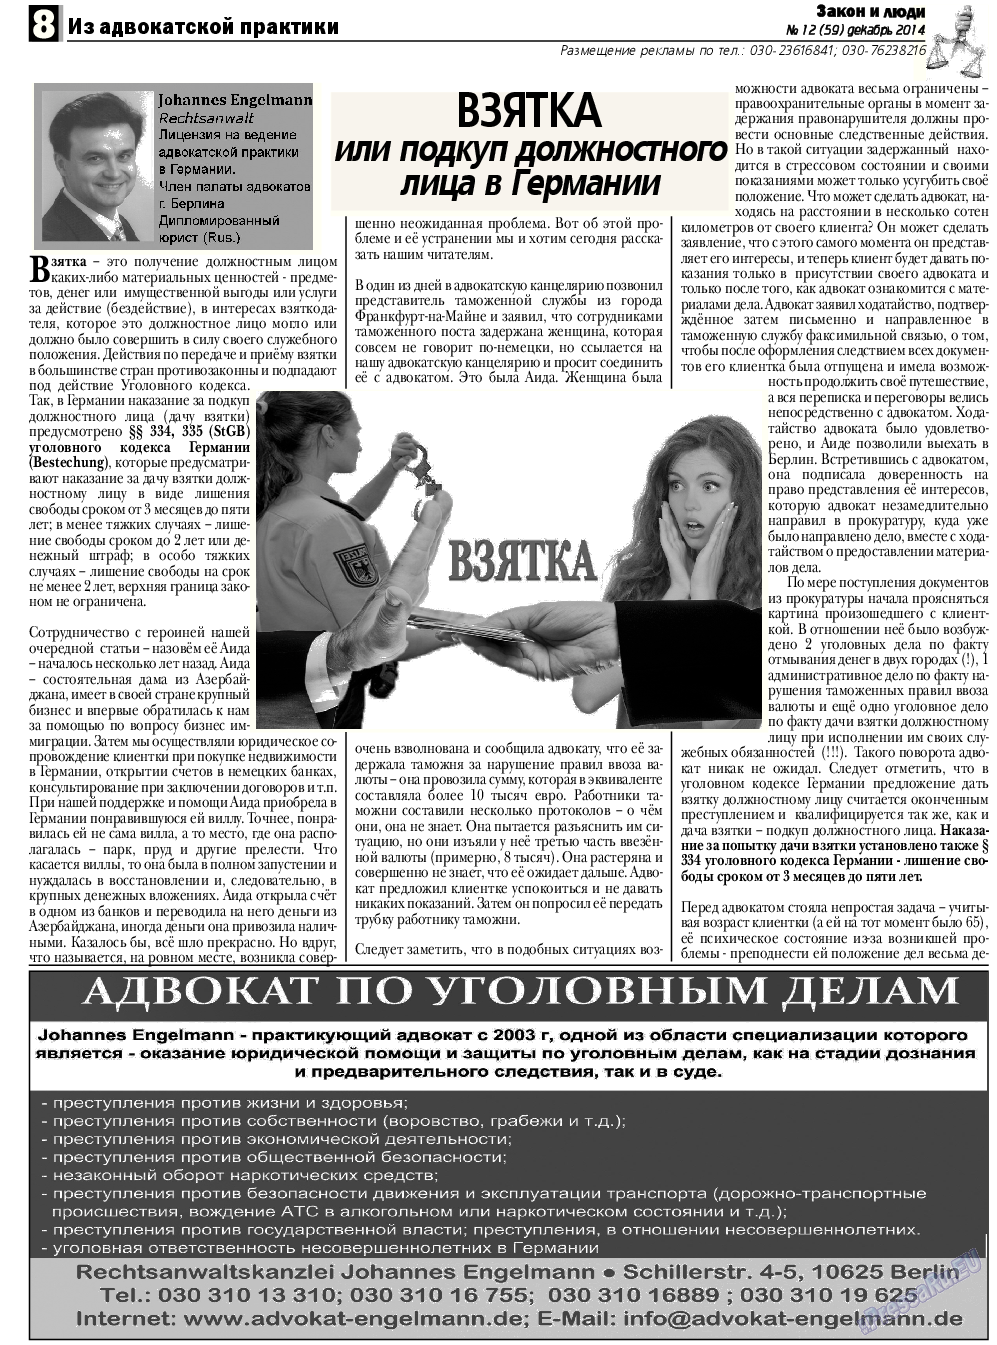 Закон и люди, газета. 2014 №12 стр.8